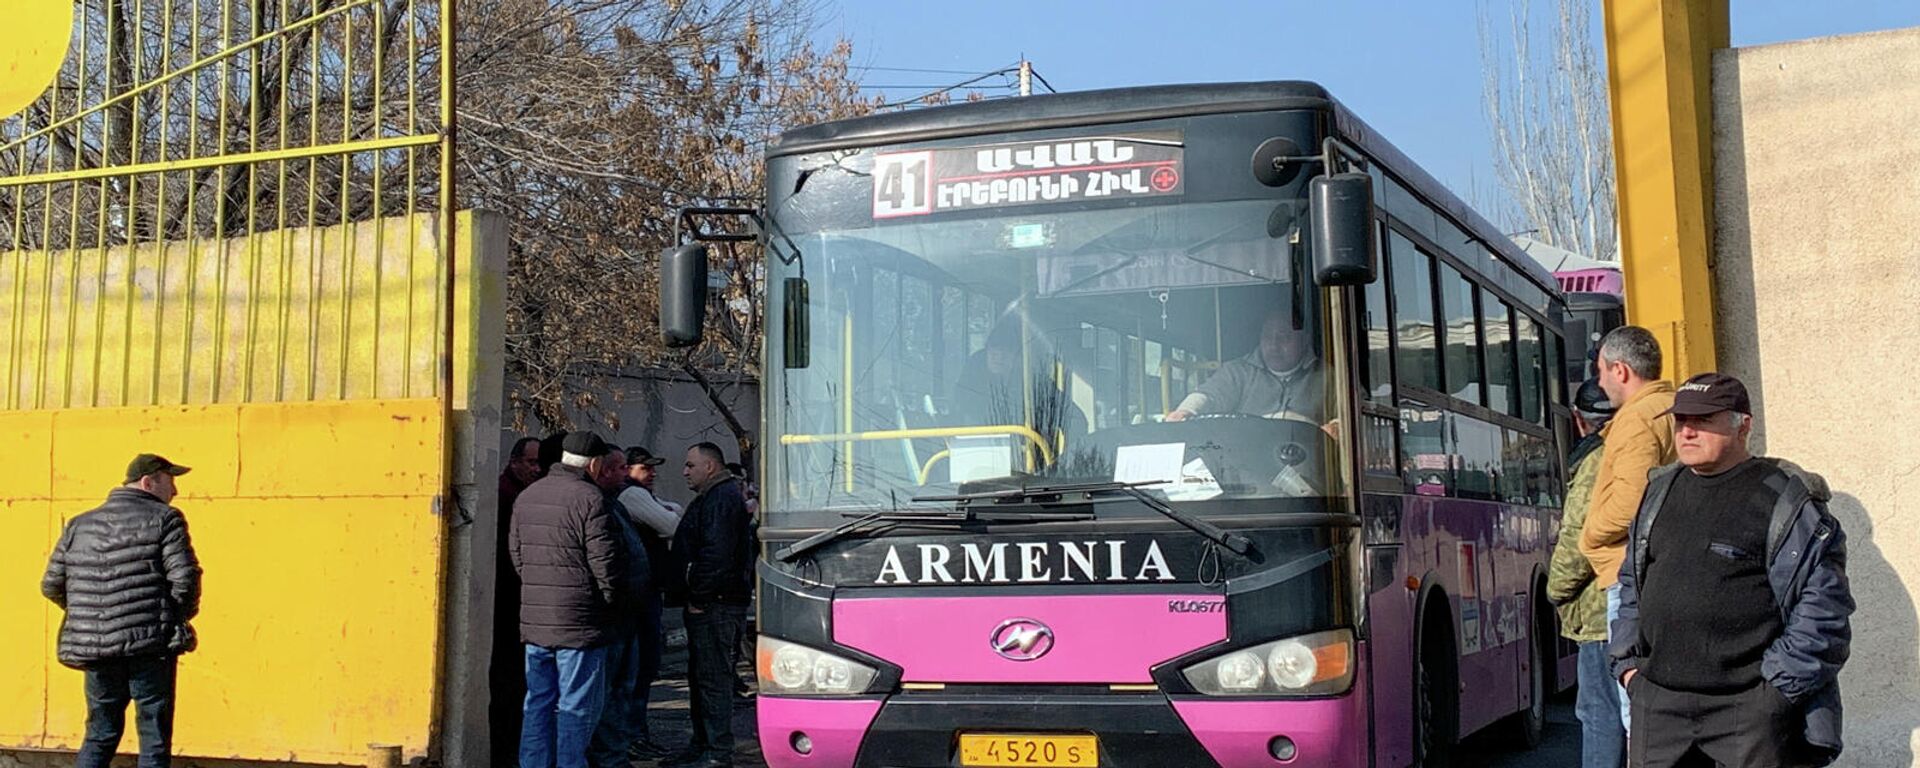 Բողոքի ակցիայի մասնակից վարորդները ավտոբուսային հավաքակայանի մոտ (12 դեկտեմբերի, 2021թ)․ Երևան - Sputnik Արմենիա, 1920, 13.12.2021